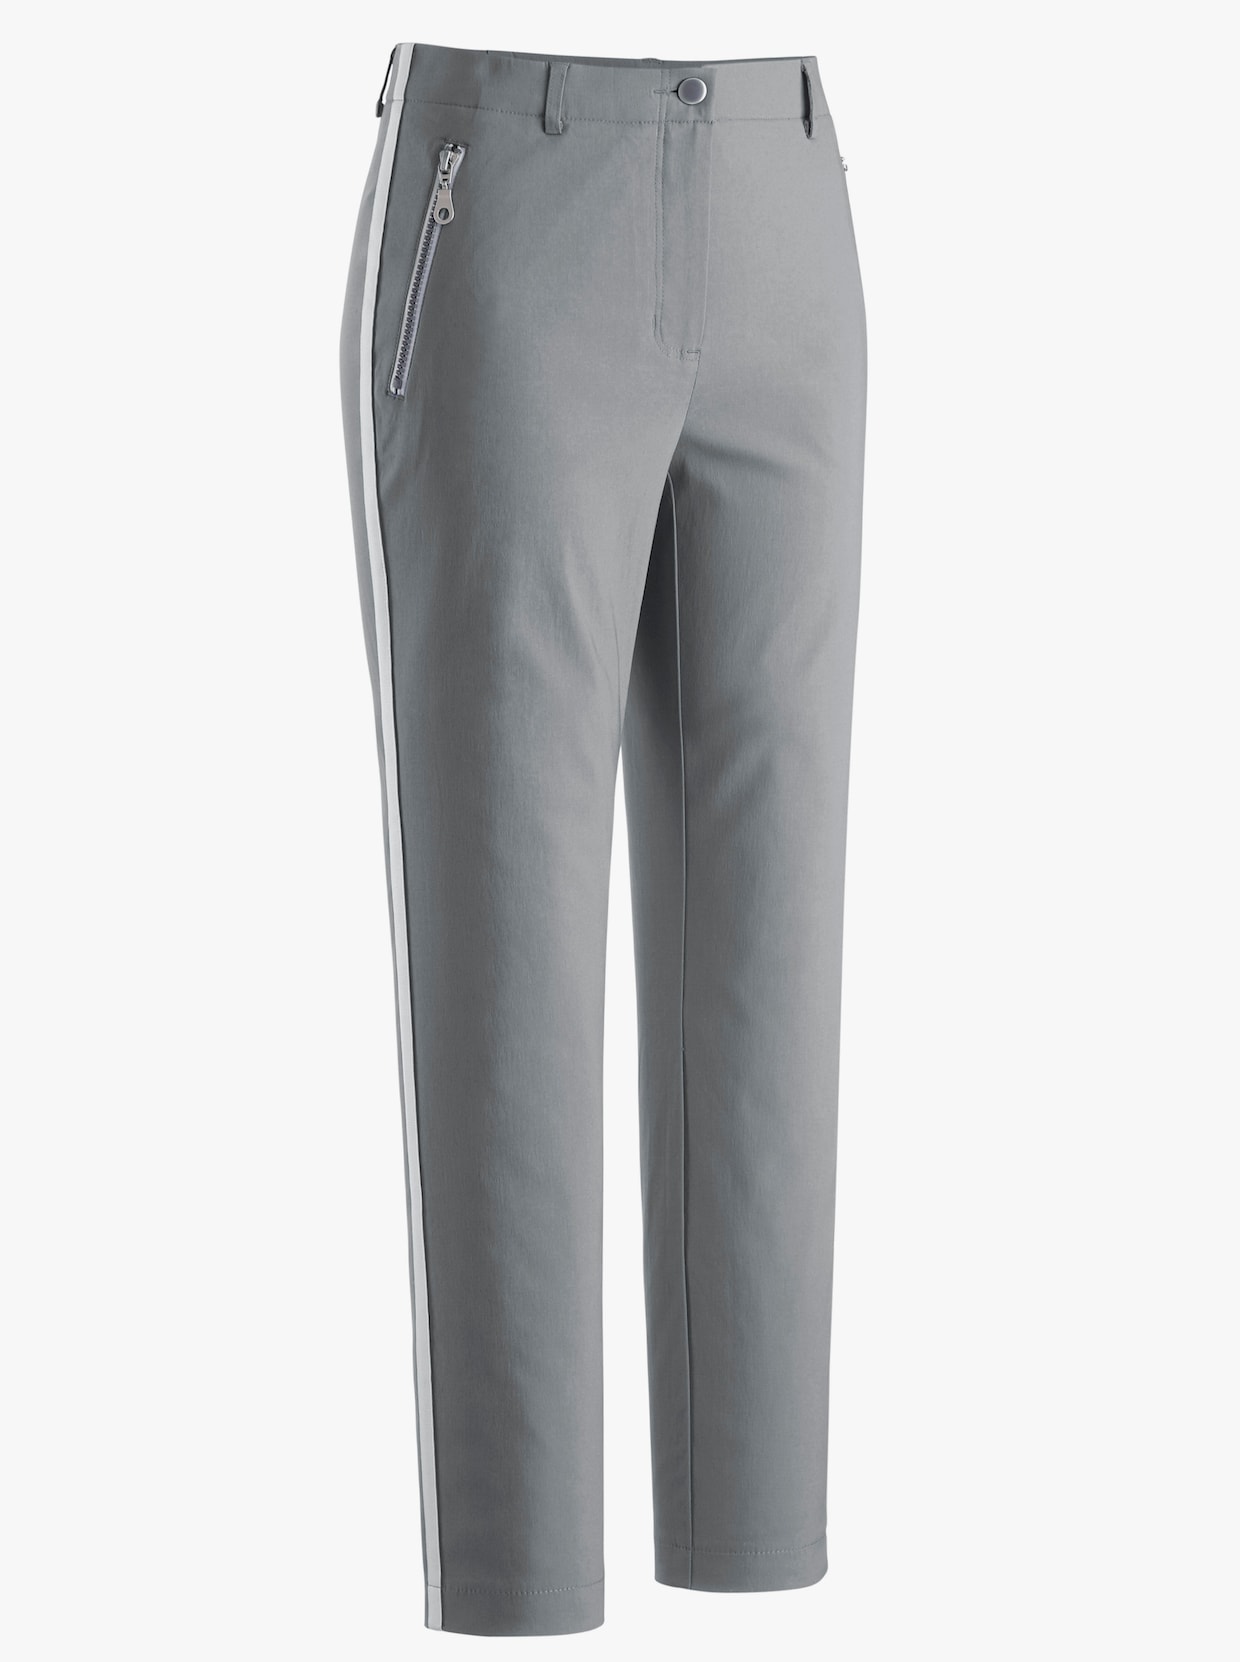 Pantalon 7/8 - gris